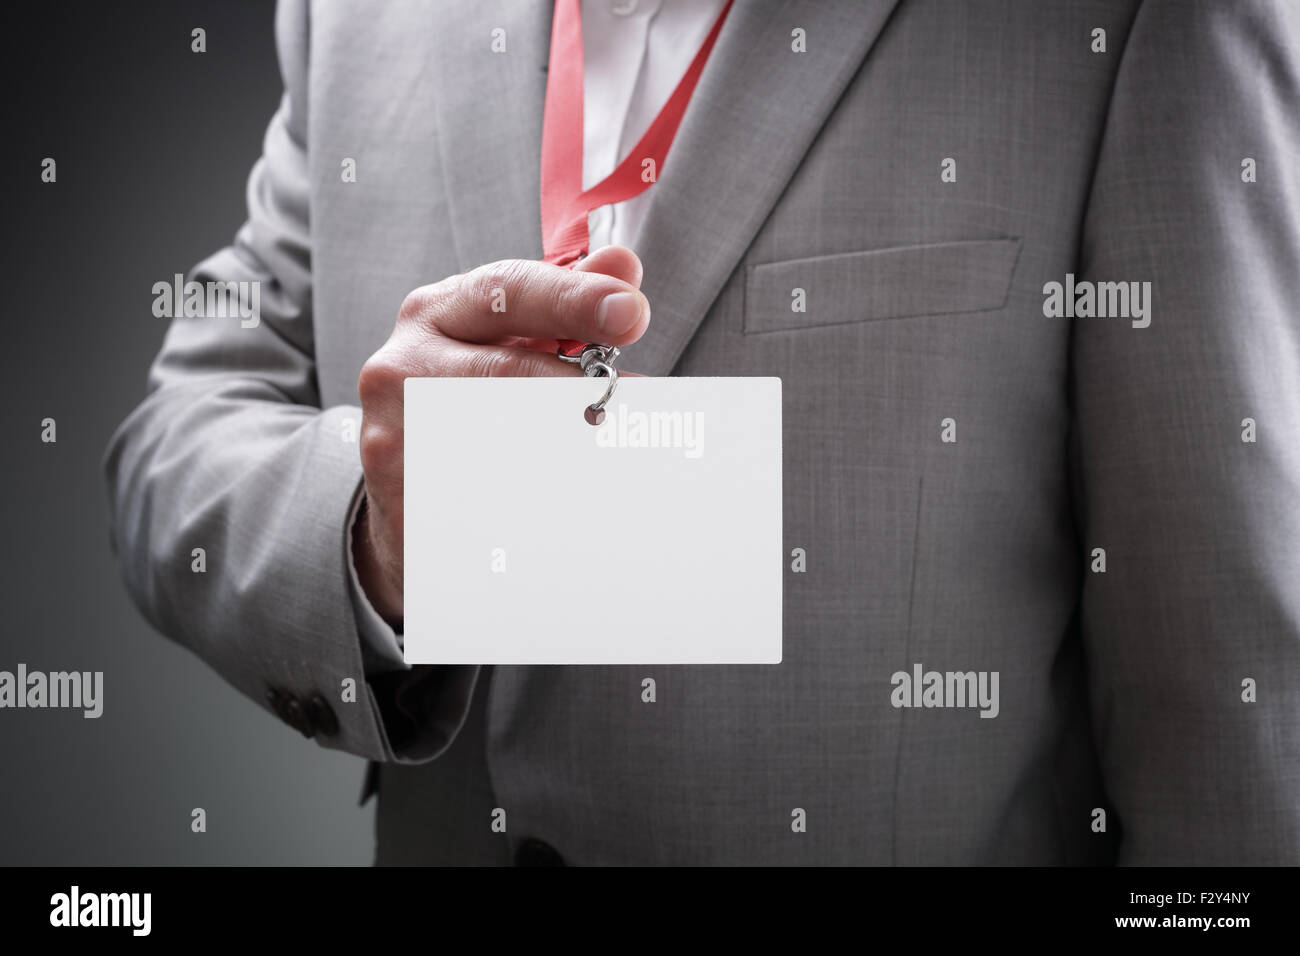 Businessman holding blank badge Banque D'Images